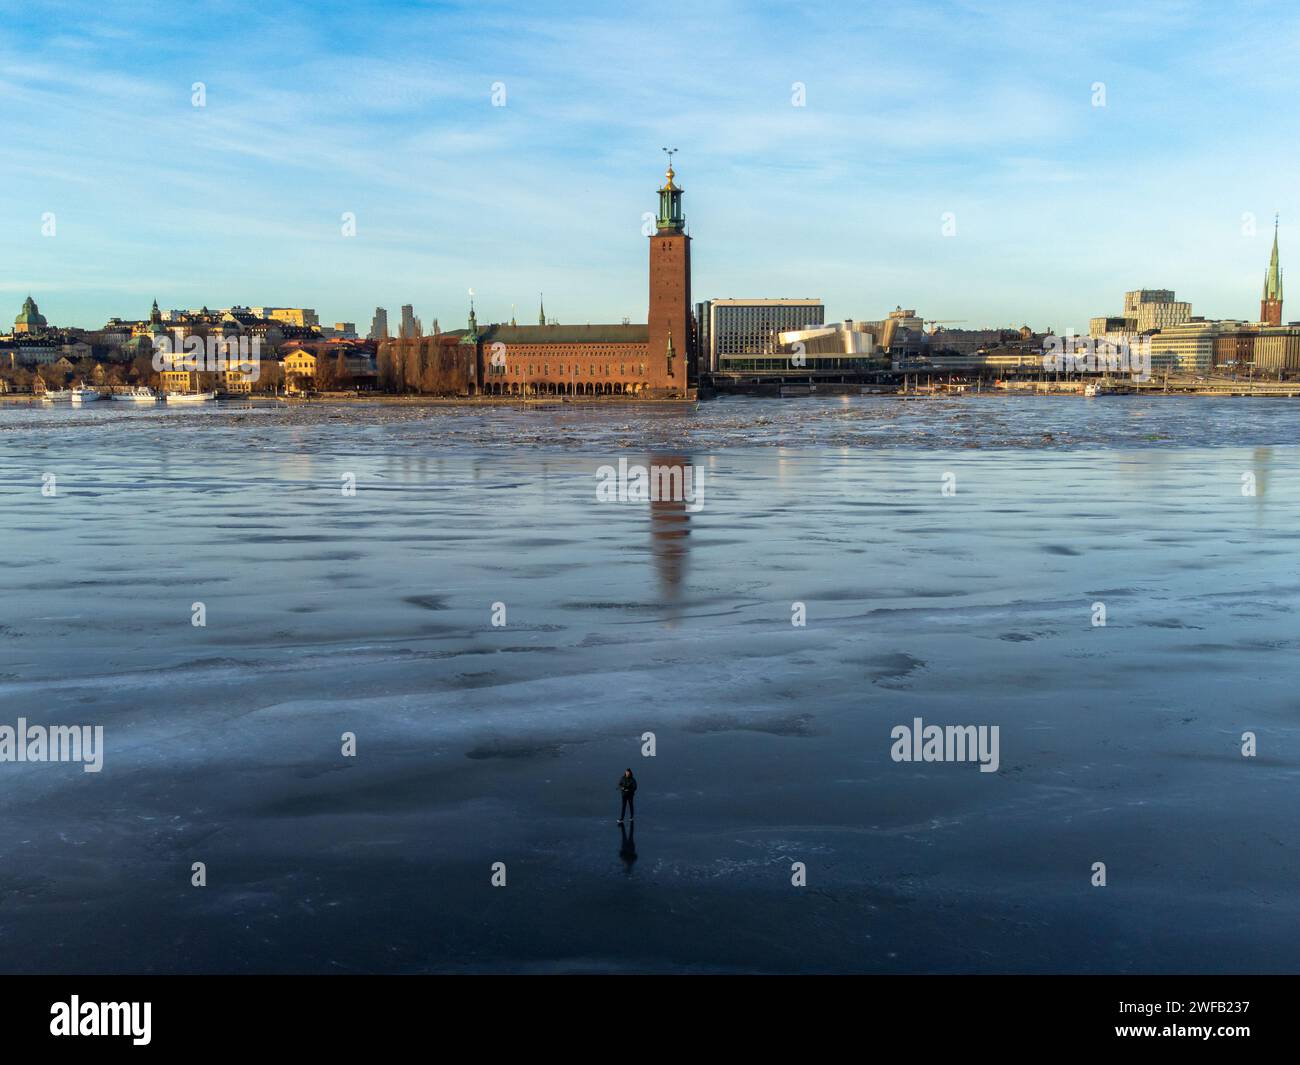 L'hôtel de ville de Stockholm en hiver, avec de la glace sur le lac Malaren. Un homme debout sur la glace au premier plan. Lumière vive, ciel bleu. Hiver. Banque D'Images